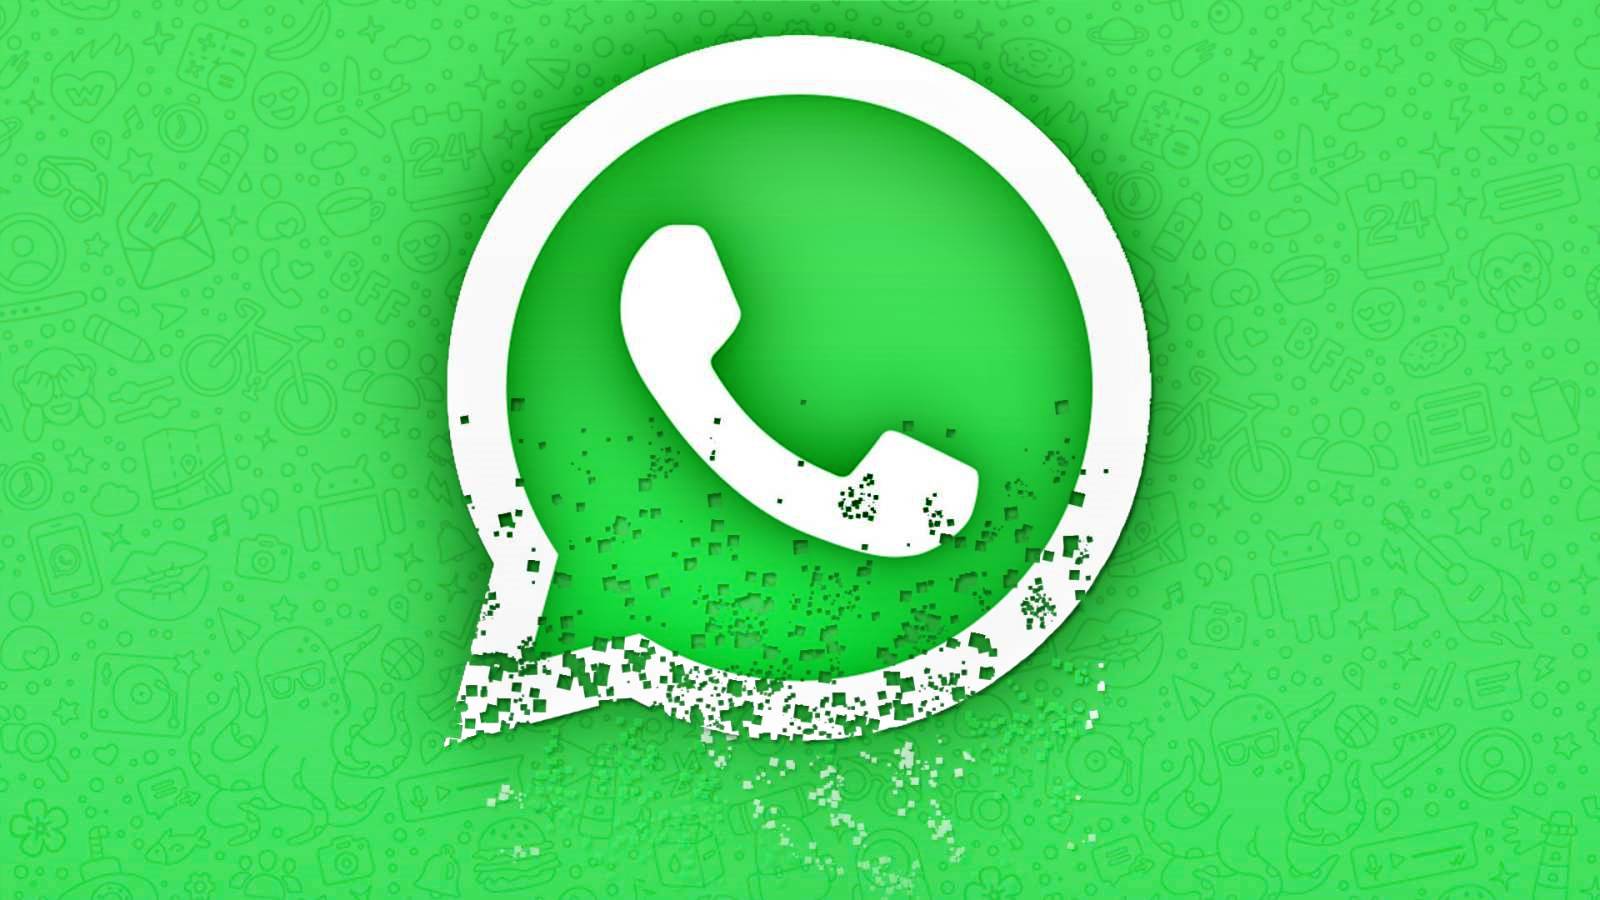 WhatsApp Modificarea Secreta iPhone Android Nu Face Ascuns